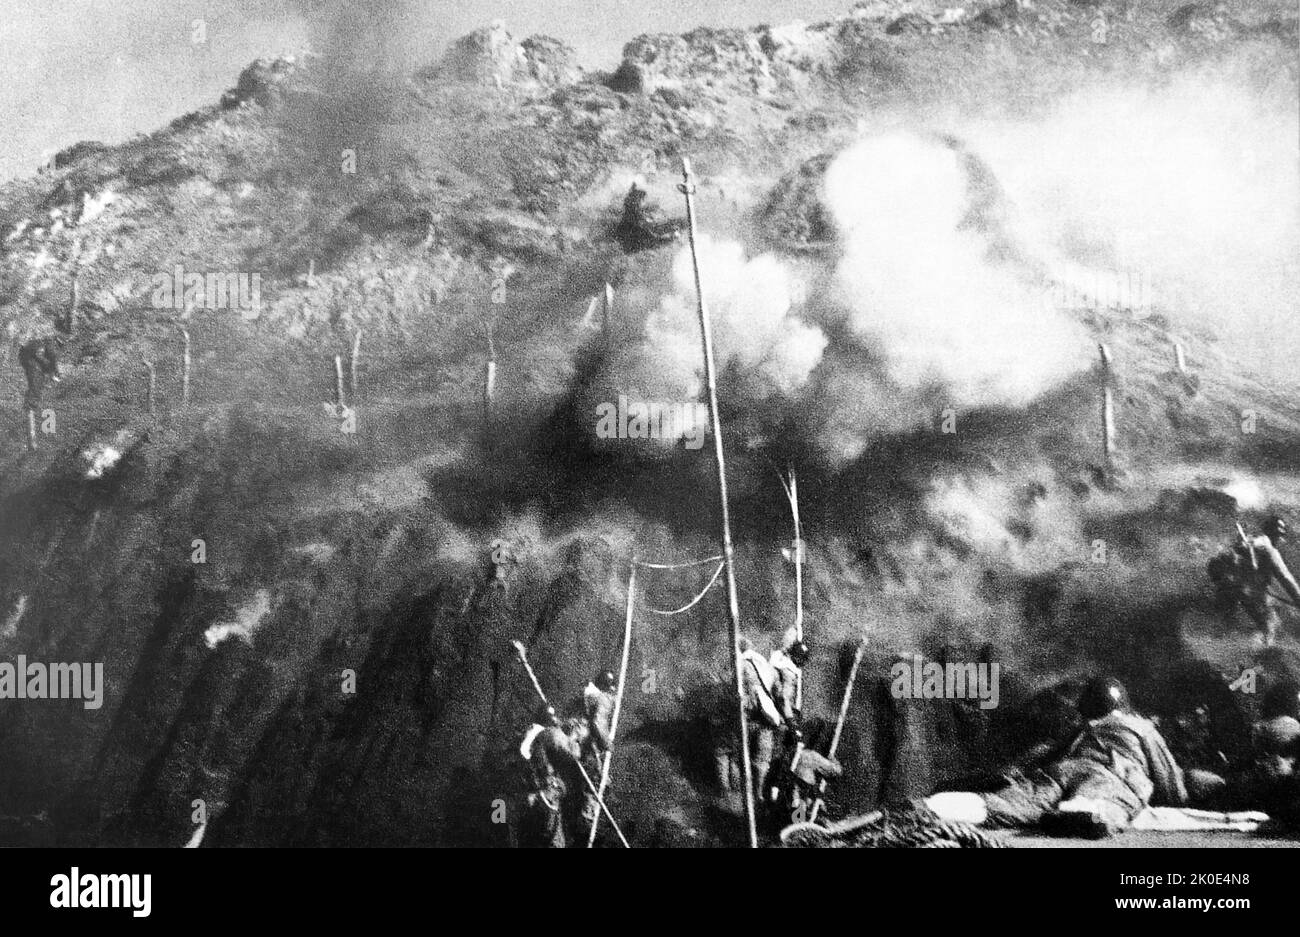 Il 18 gennaio 1949, un'unità dell'Esercito popolare di Liberazione sulla prima linea di Zhejiang, con la stretta collaborazione della marina e dell'aeronautica, attraversò il mare per combattere, liberando l'armata Chiang Kai-shek. Isola di jiangshan. Foto Stock